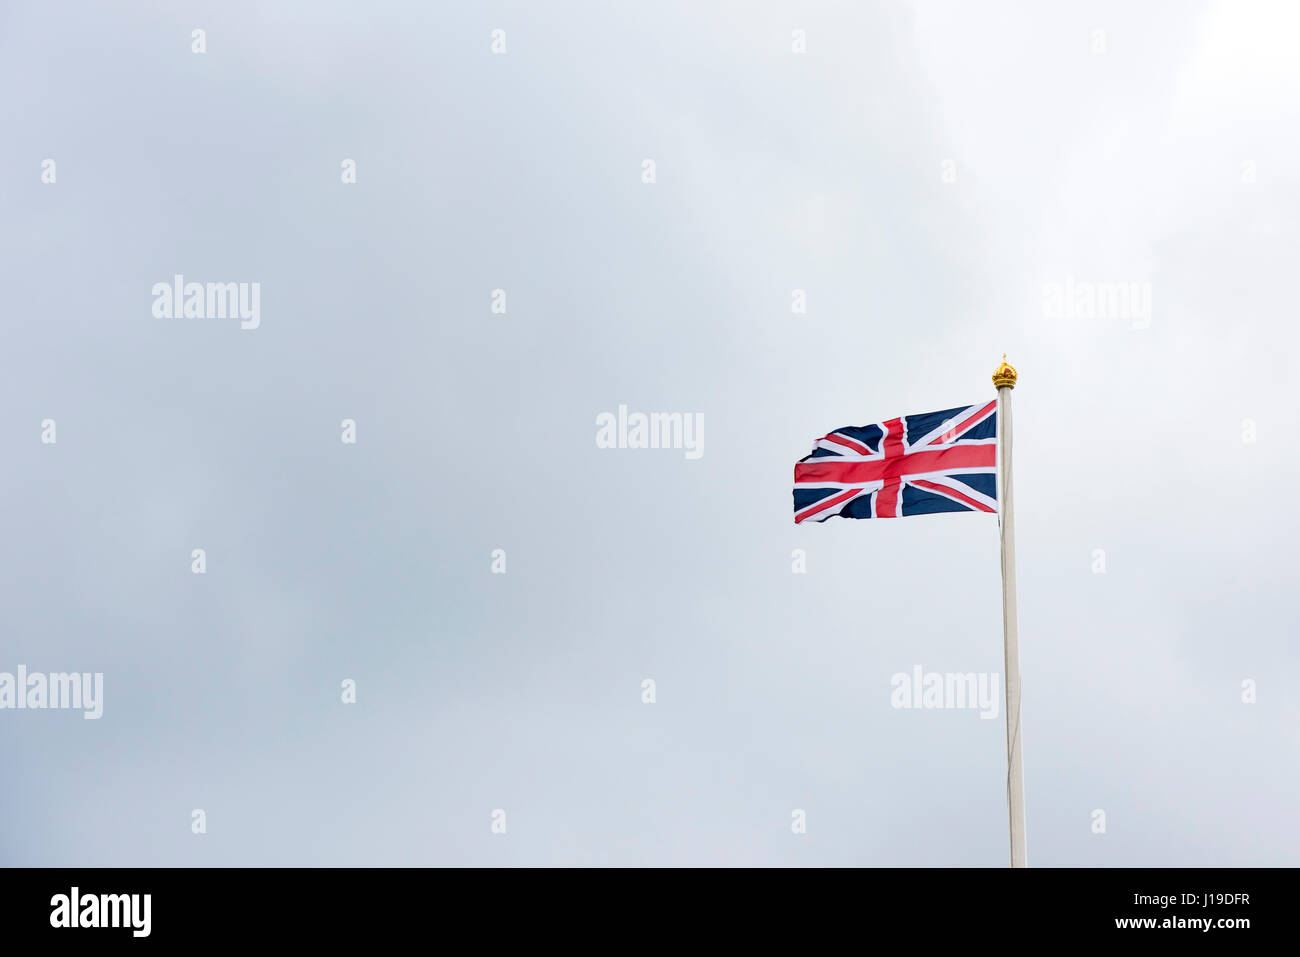 Union jack flag flying over Buckingham Palace. City of Westminster, London, England Stock Photo